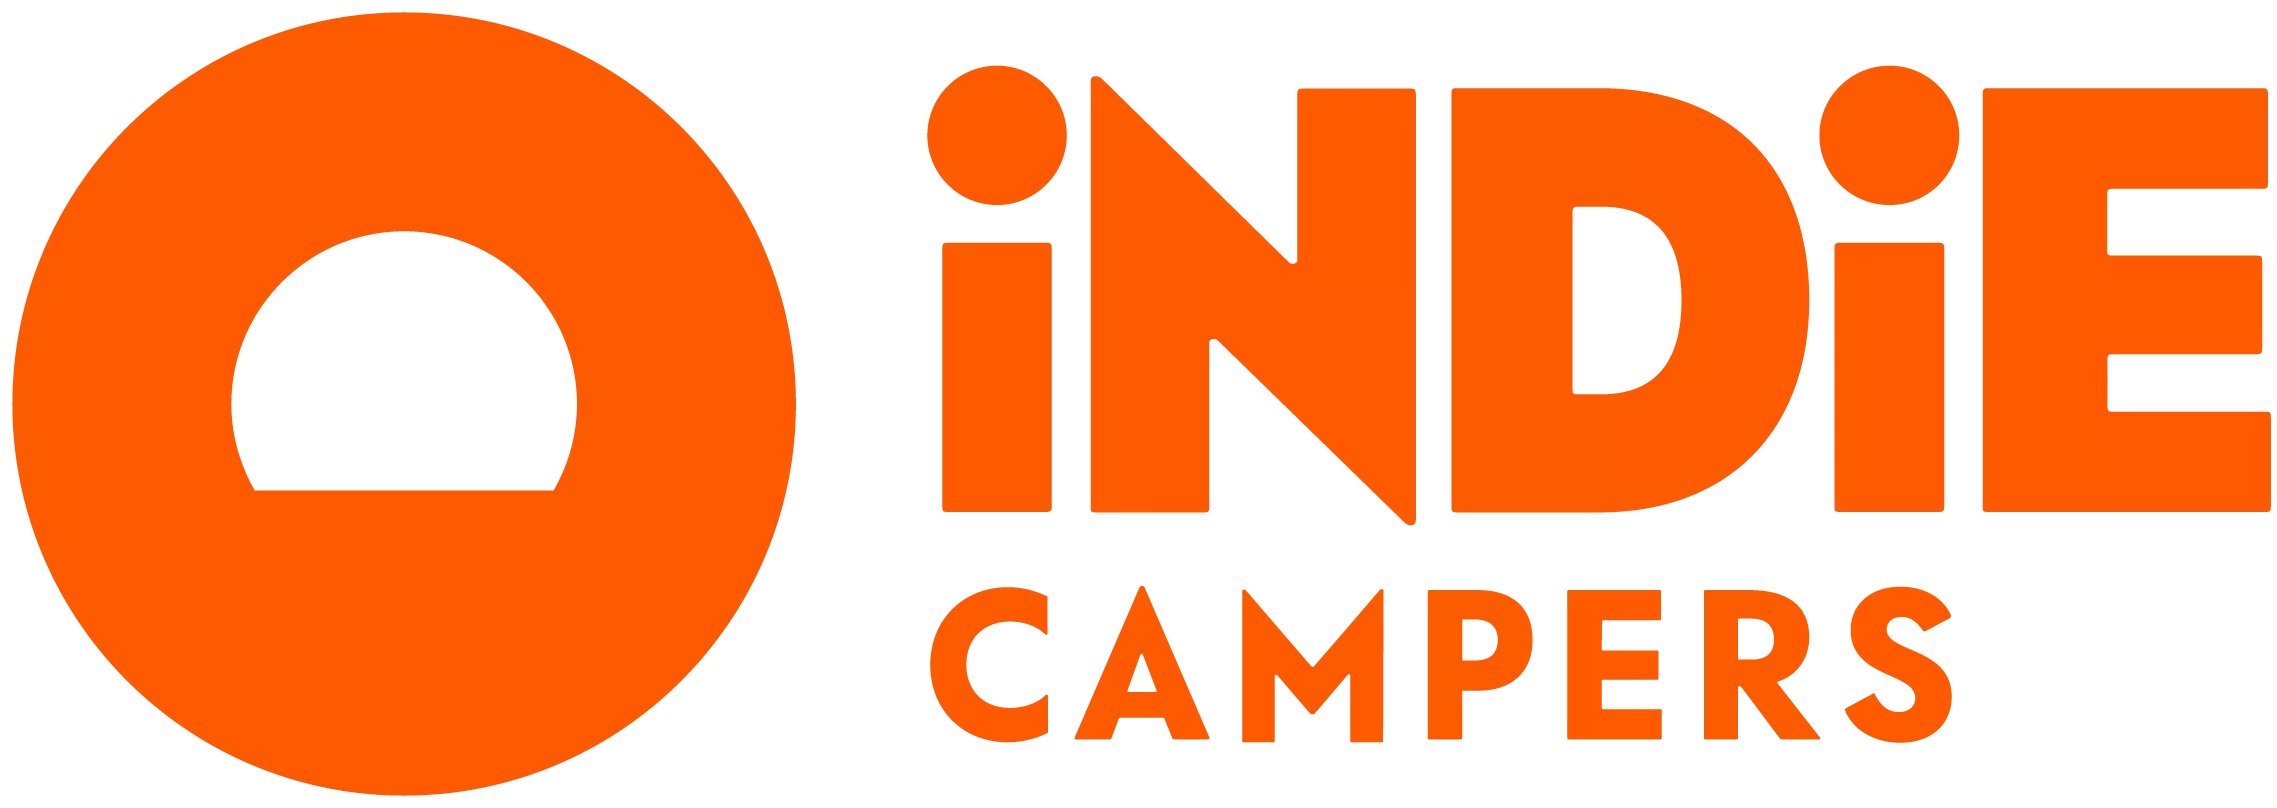 Mietwagen von Indie Campers